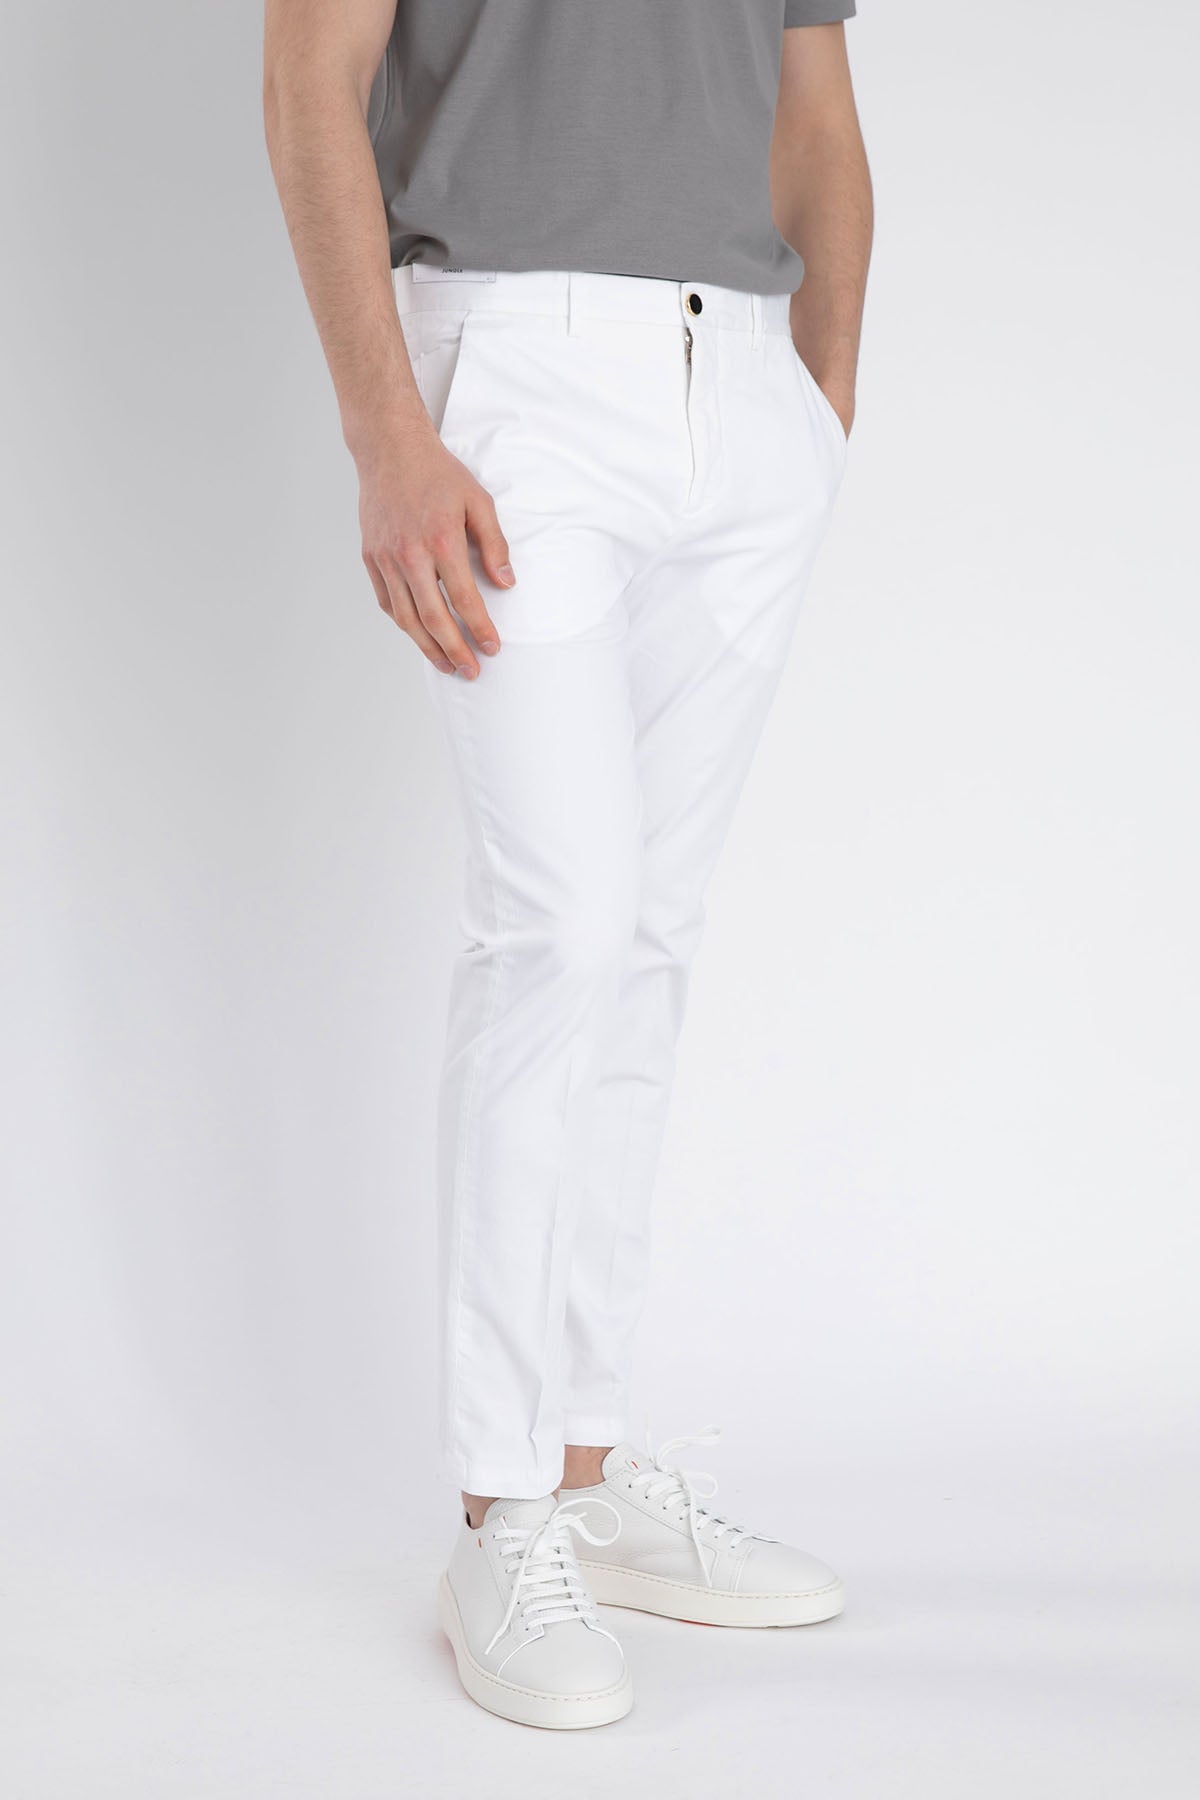 Pantaloni Torino Jungle Skinny Fit Pantolon-Libas Trendy Fashion Store